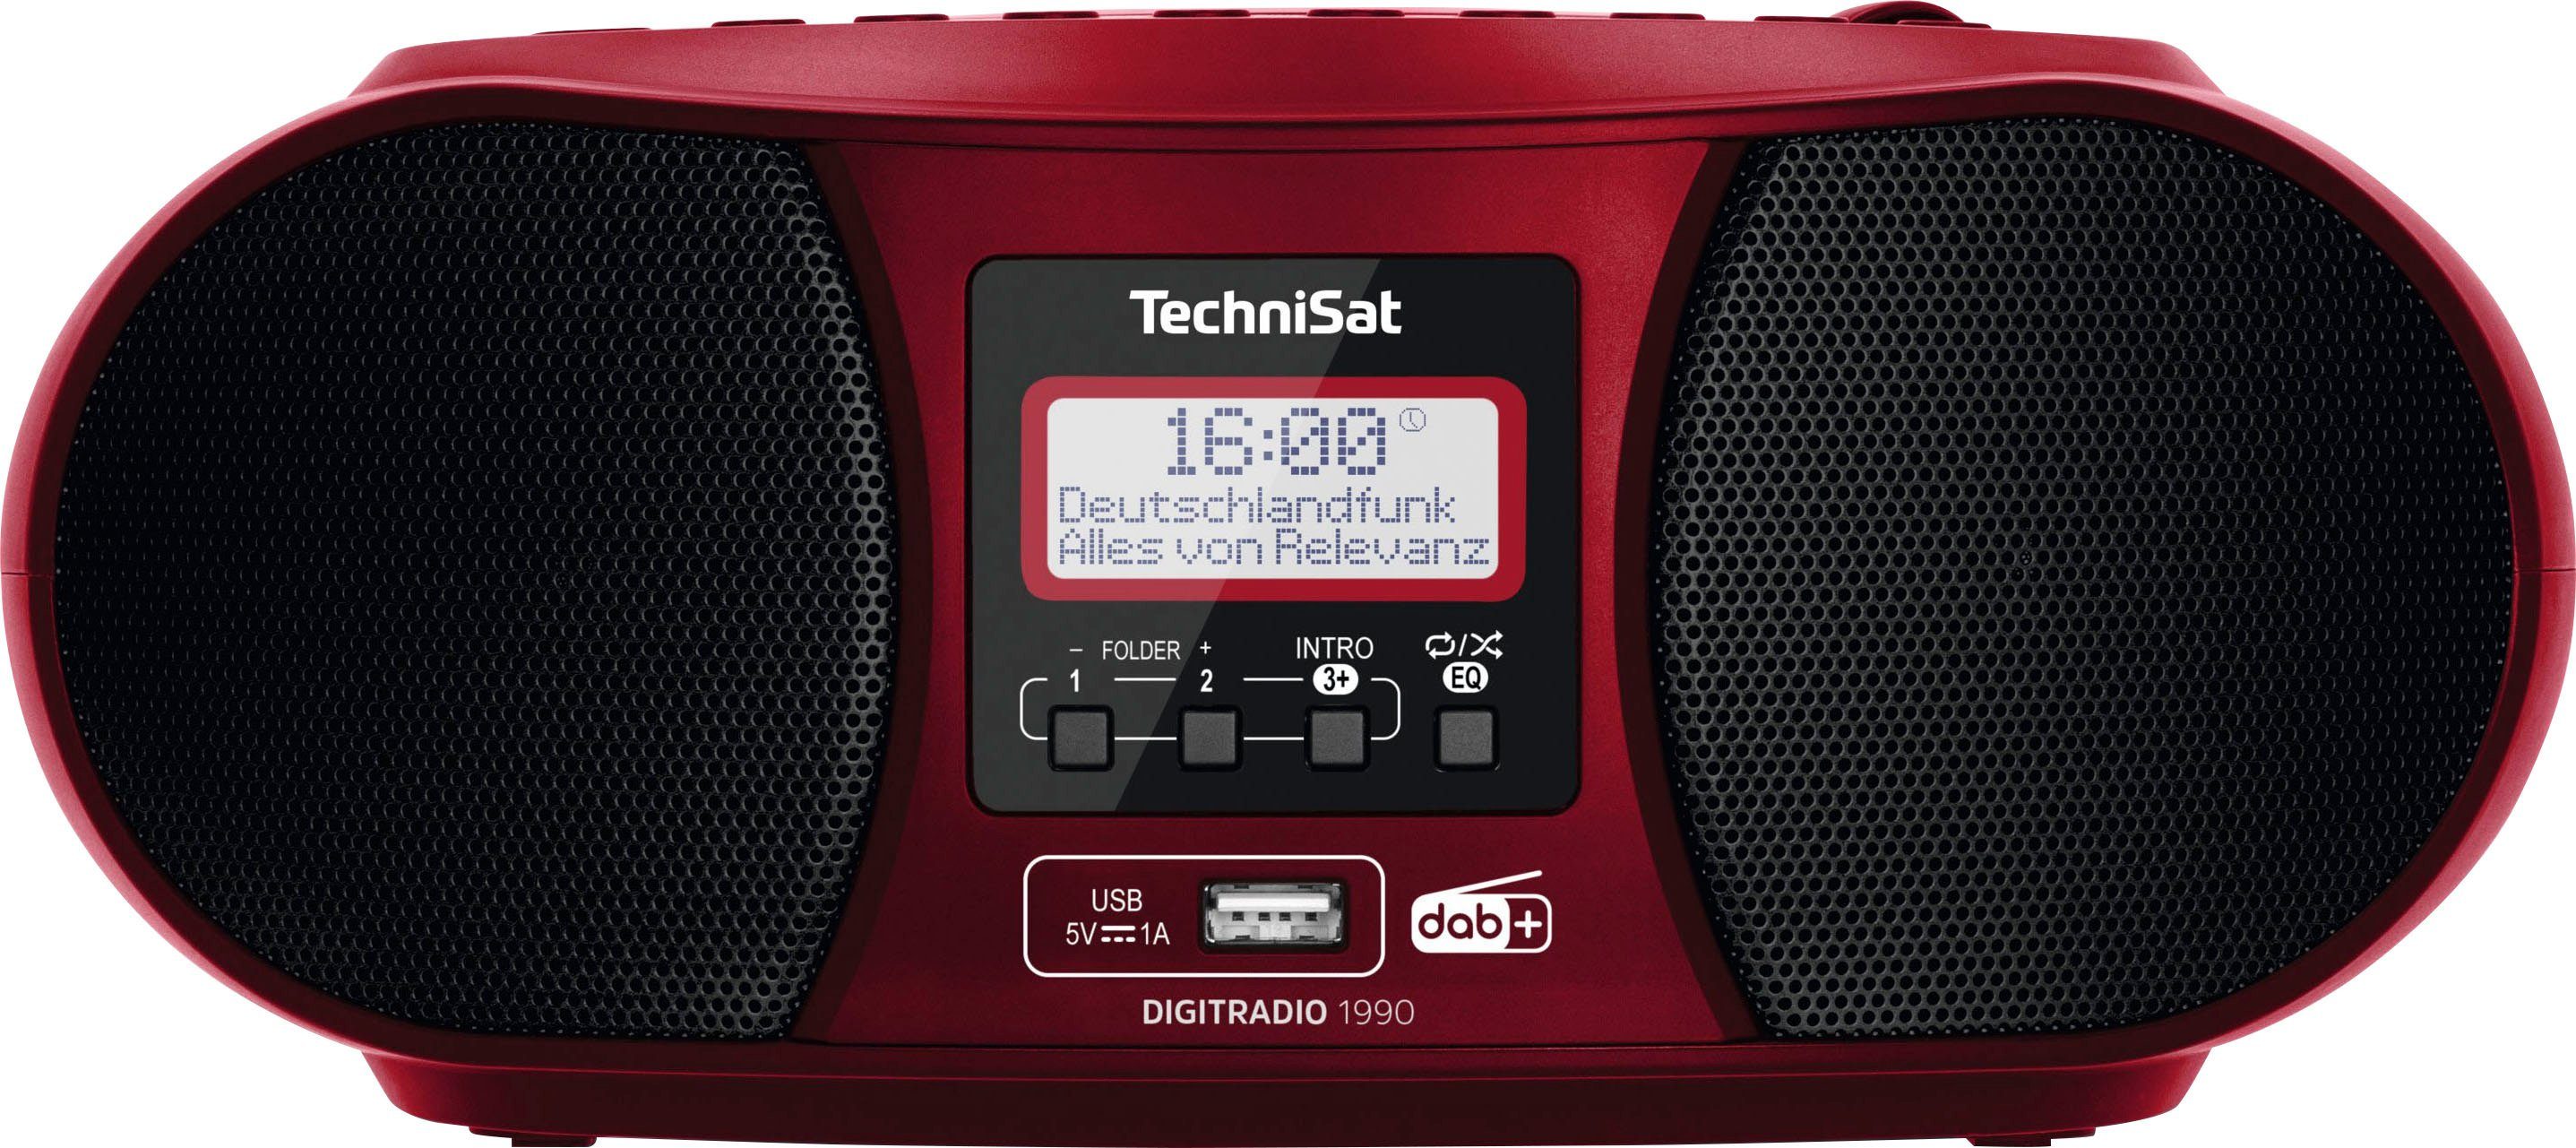 TechniSat DIGITRADIO (DAB), mit UKW RDS, rot 3 Digitalradio W, CD-Player) (DAB) (Digitalradio 1990